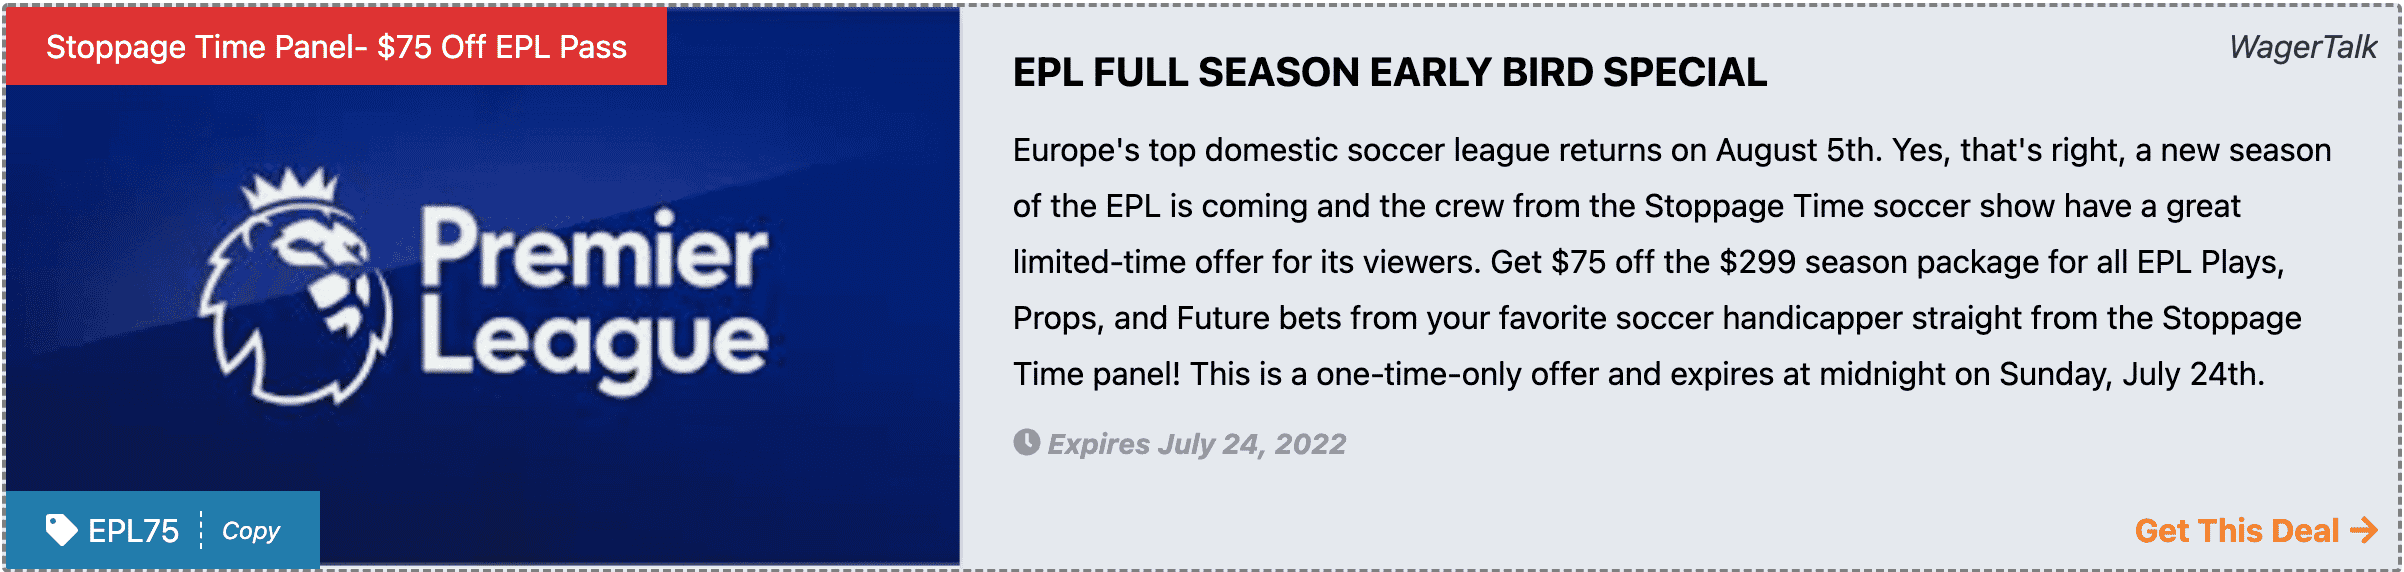 Get EPL Picks Package Deal